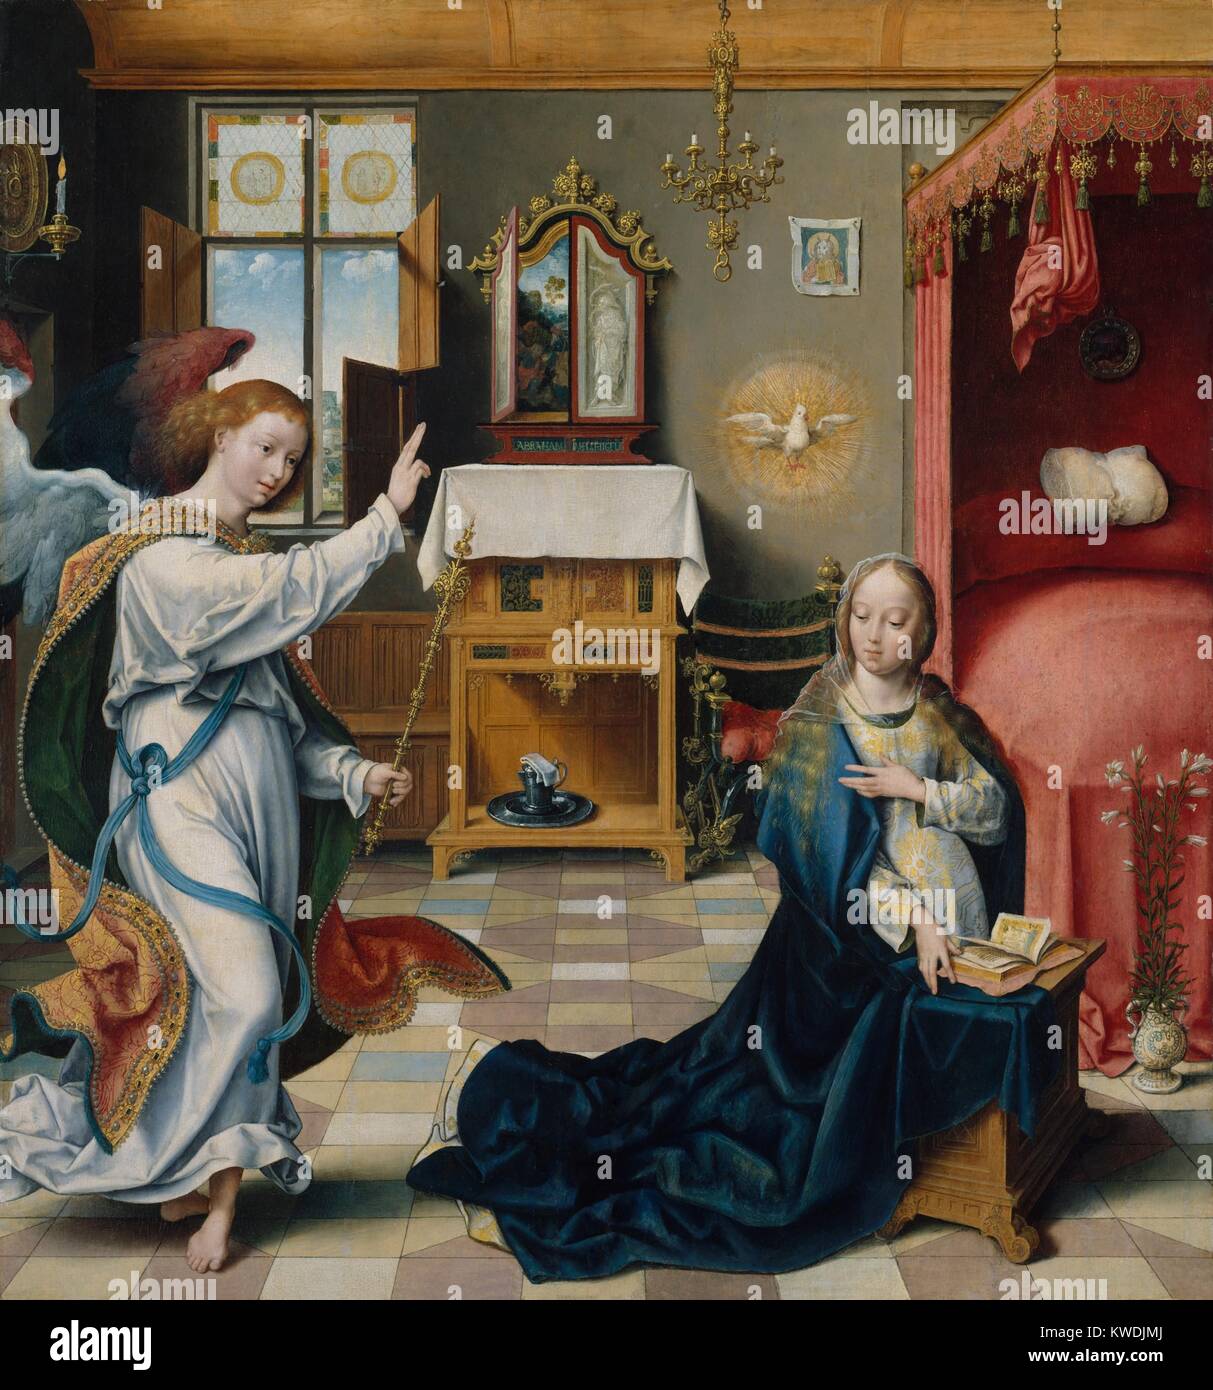 La Anunciación, por Joos van Cleve de 1525, Netherlandish, Northern Renaissance pintura al óleo. El ángel Gabriel y la Virgen María dentro de un interior amueblado elaboradamente. Las figuras están pintadas con graciosa animación y gran detalle (BSLOC 2017 16 92) Foto de stock